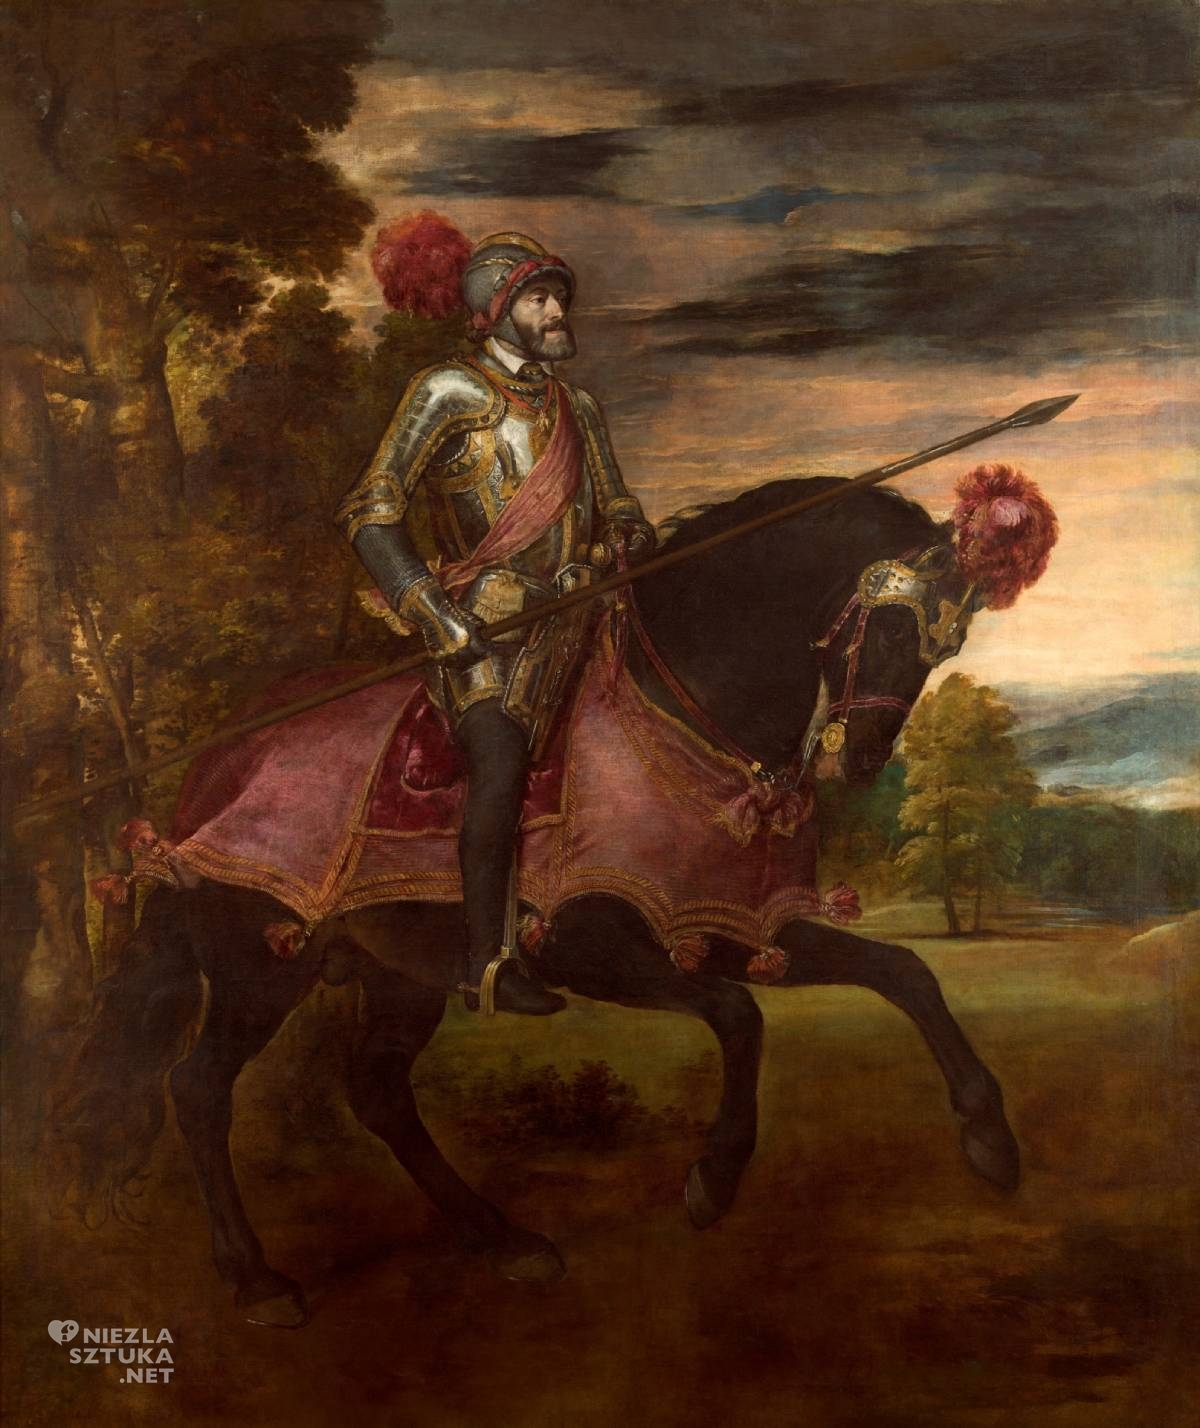 Tycjan, Karol V po bitwie pod Mühlbergiem, sztuka włoska, renesans, Niezła Sztuka